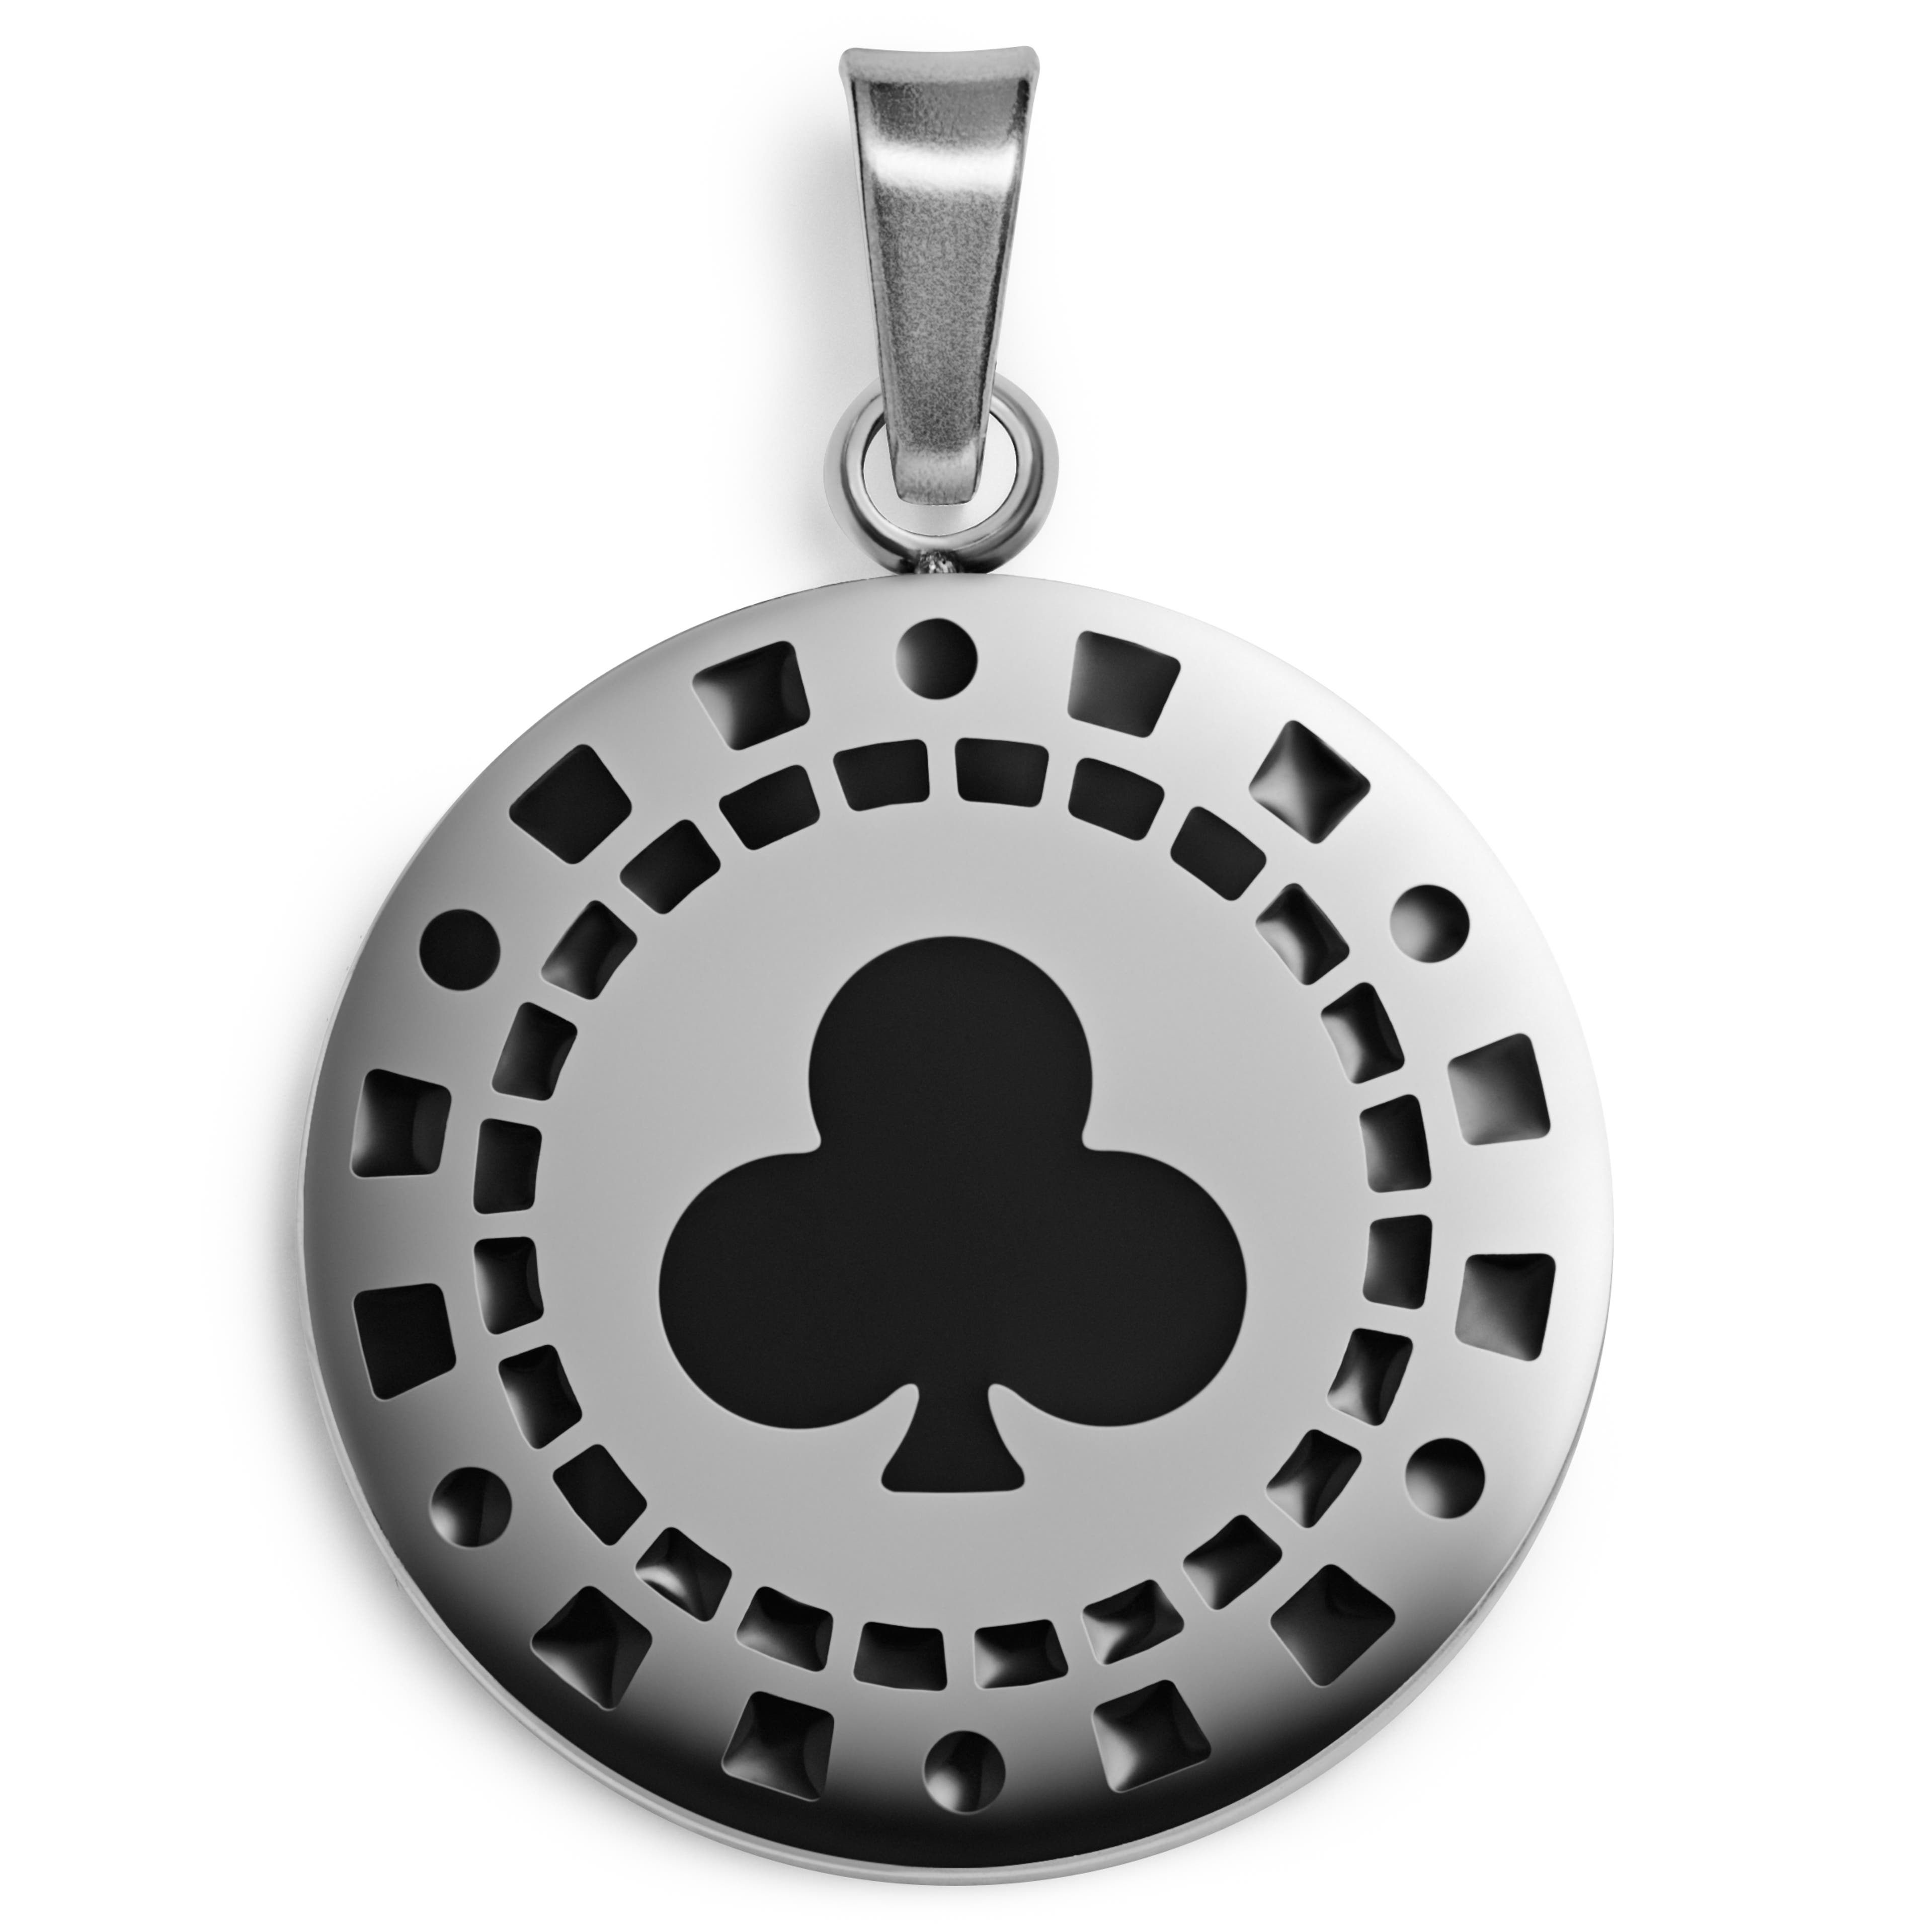 Ace | Přívěsek pokerový žeton se žaludy ve stříbrné barvě